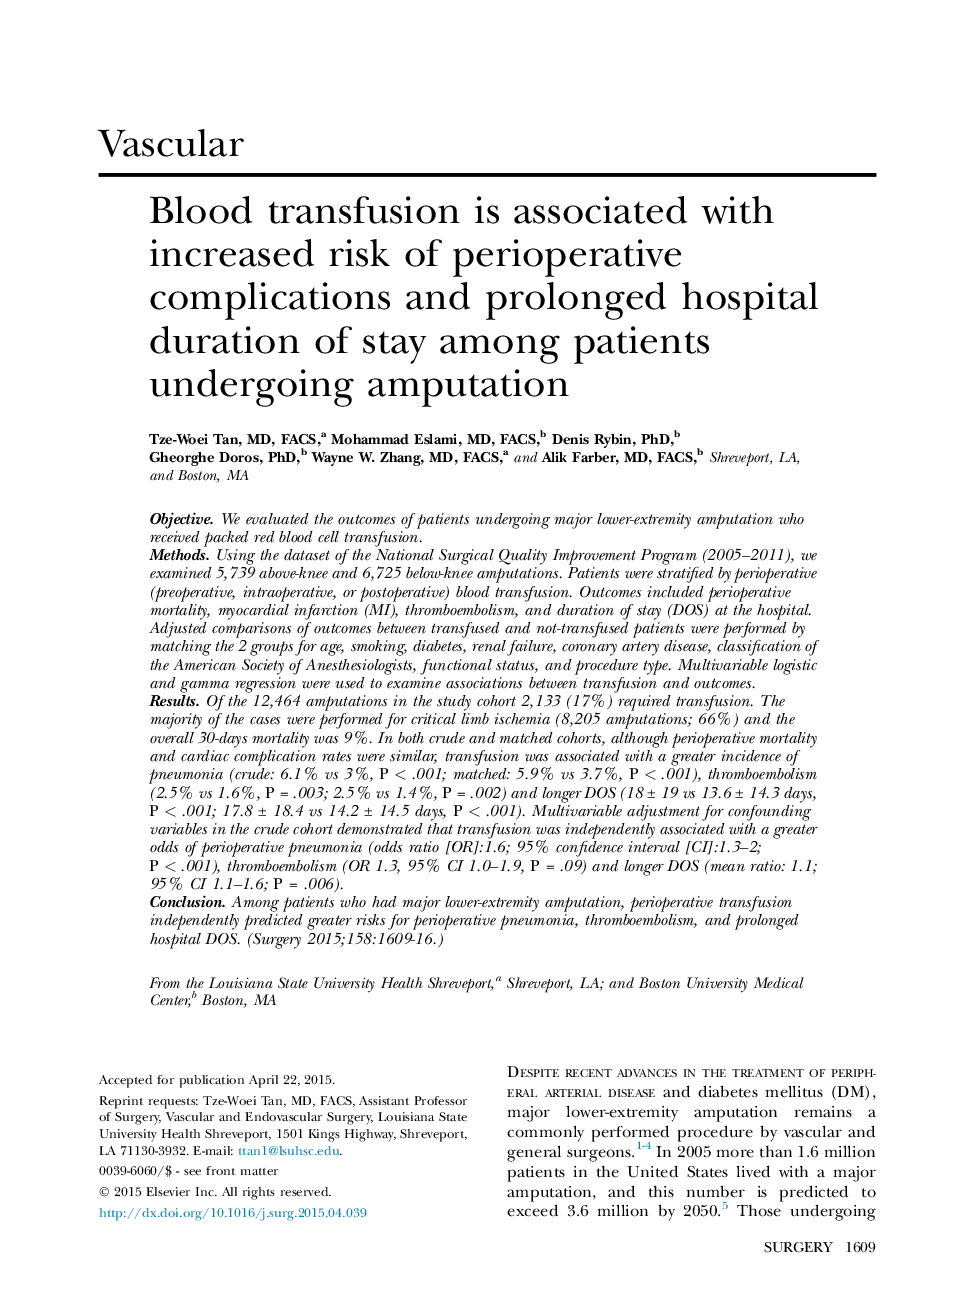 انتقال خون با افزایش خطر عوارض پس از عمل همراه است و طول عمر بیمارستان طولانی مدت در میان بیماران تحت قطع عضو 